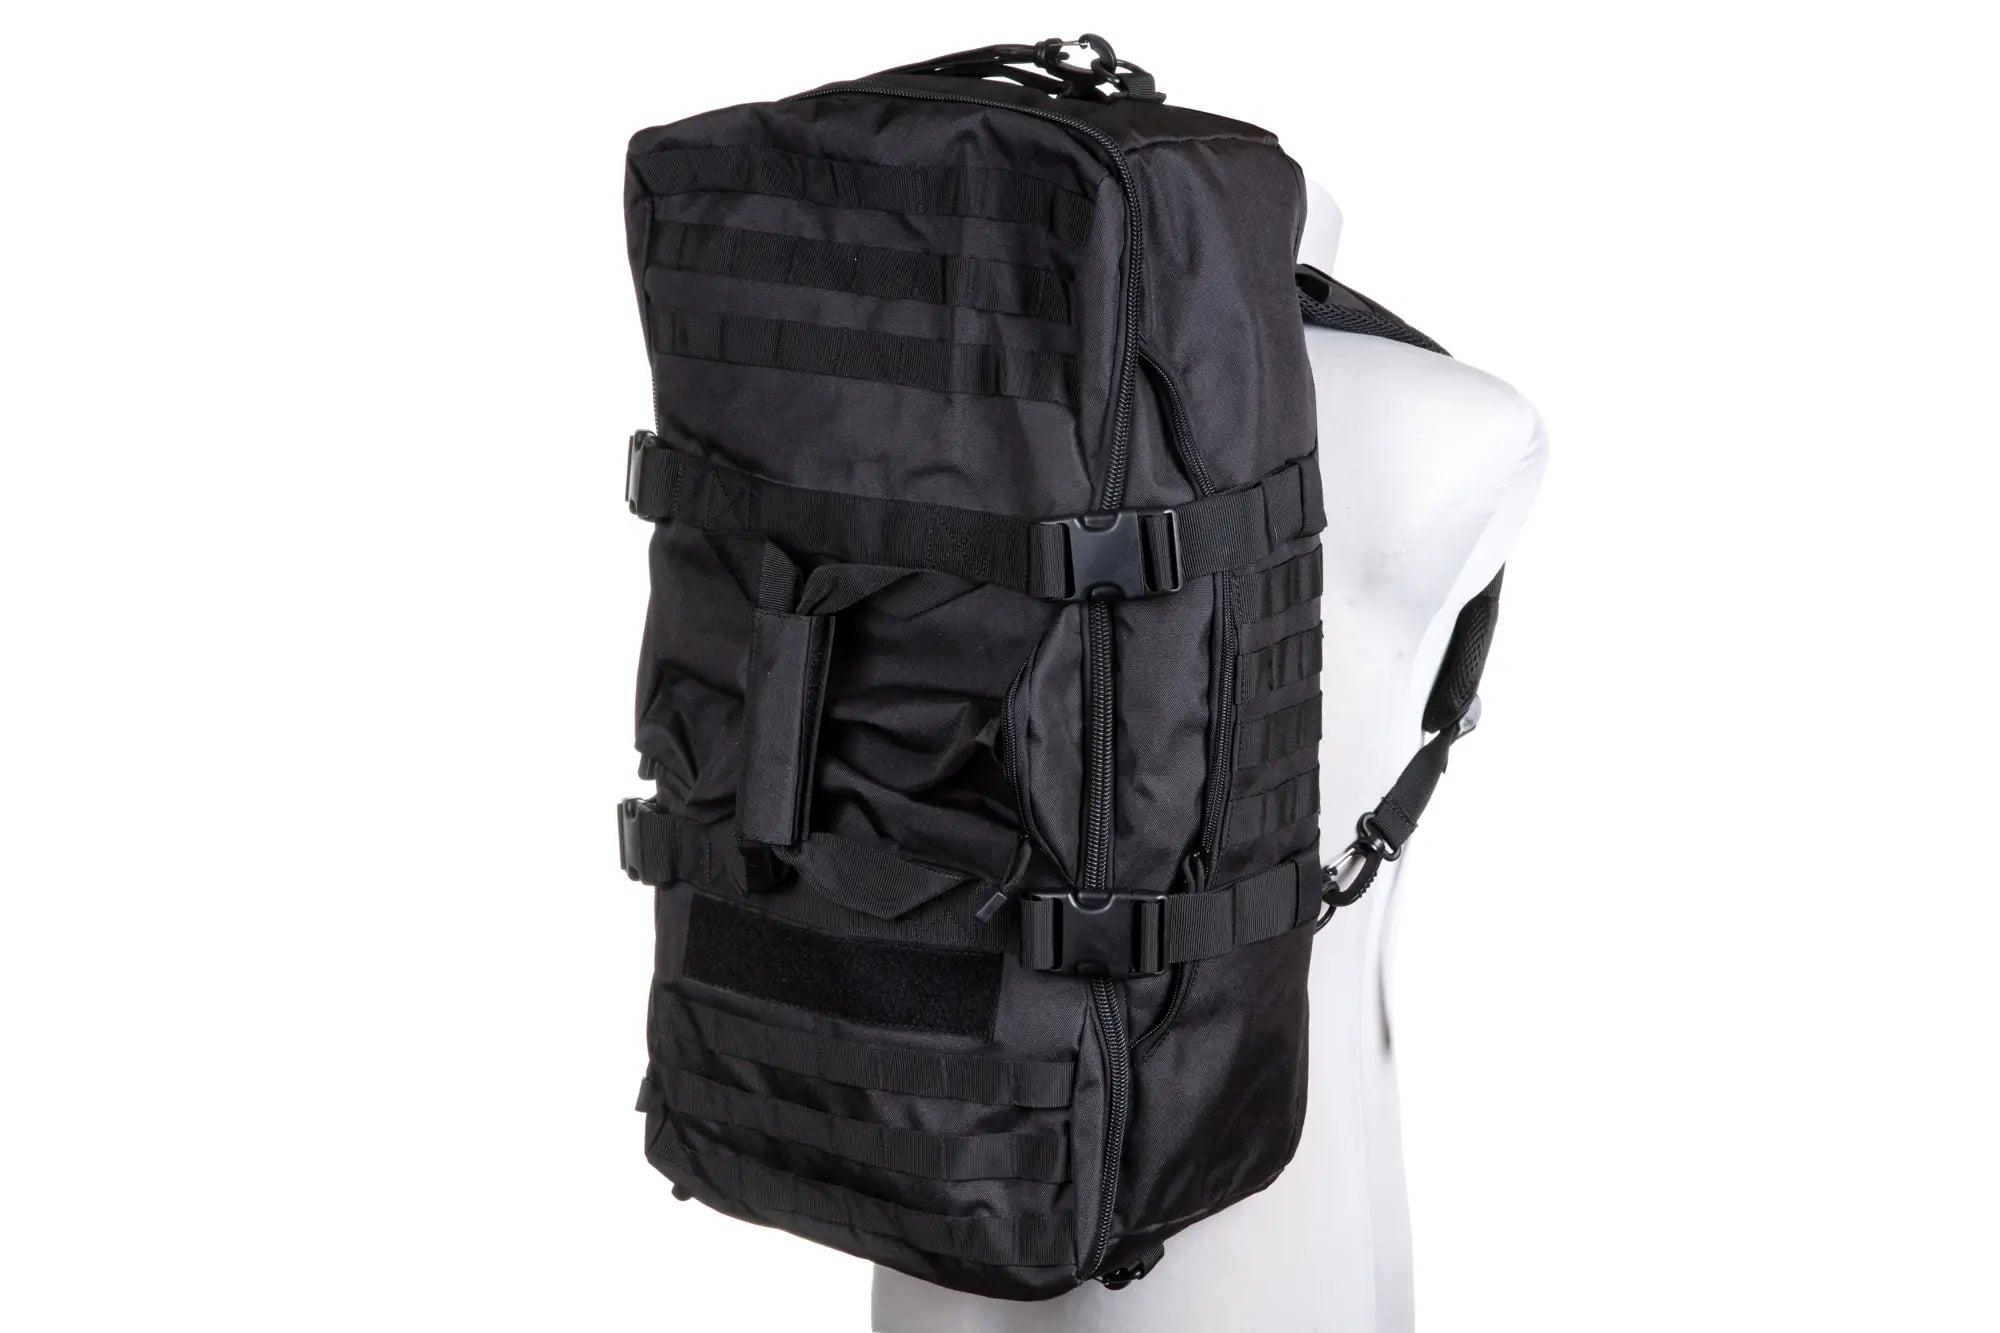 Backpack 750-1 Black